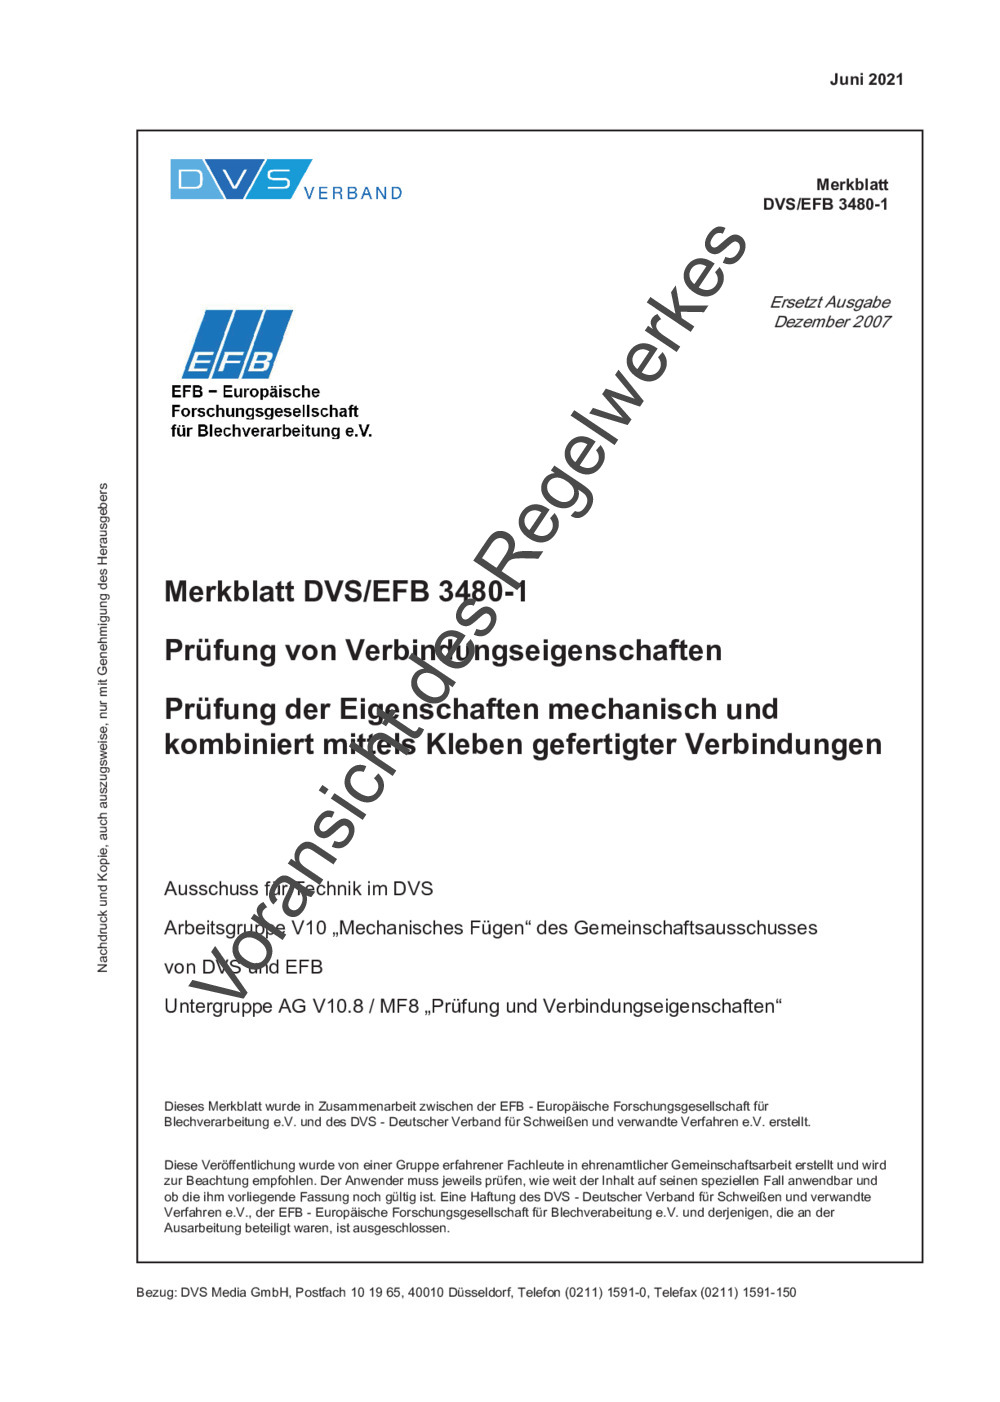 Merkblatt DVS/EFB 3480-1 (06/2021) / Mechanisches Fügen -  DVS-Regelwerksportal